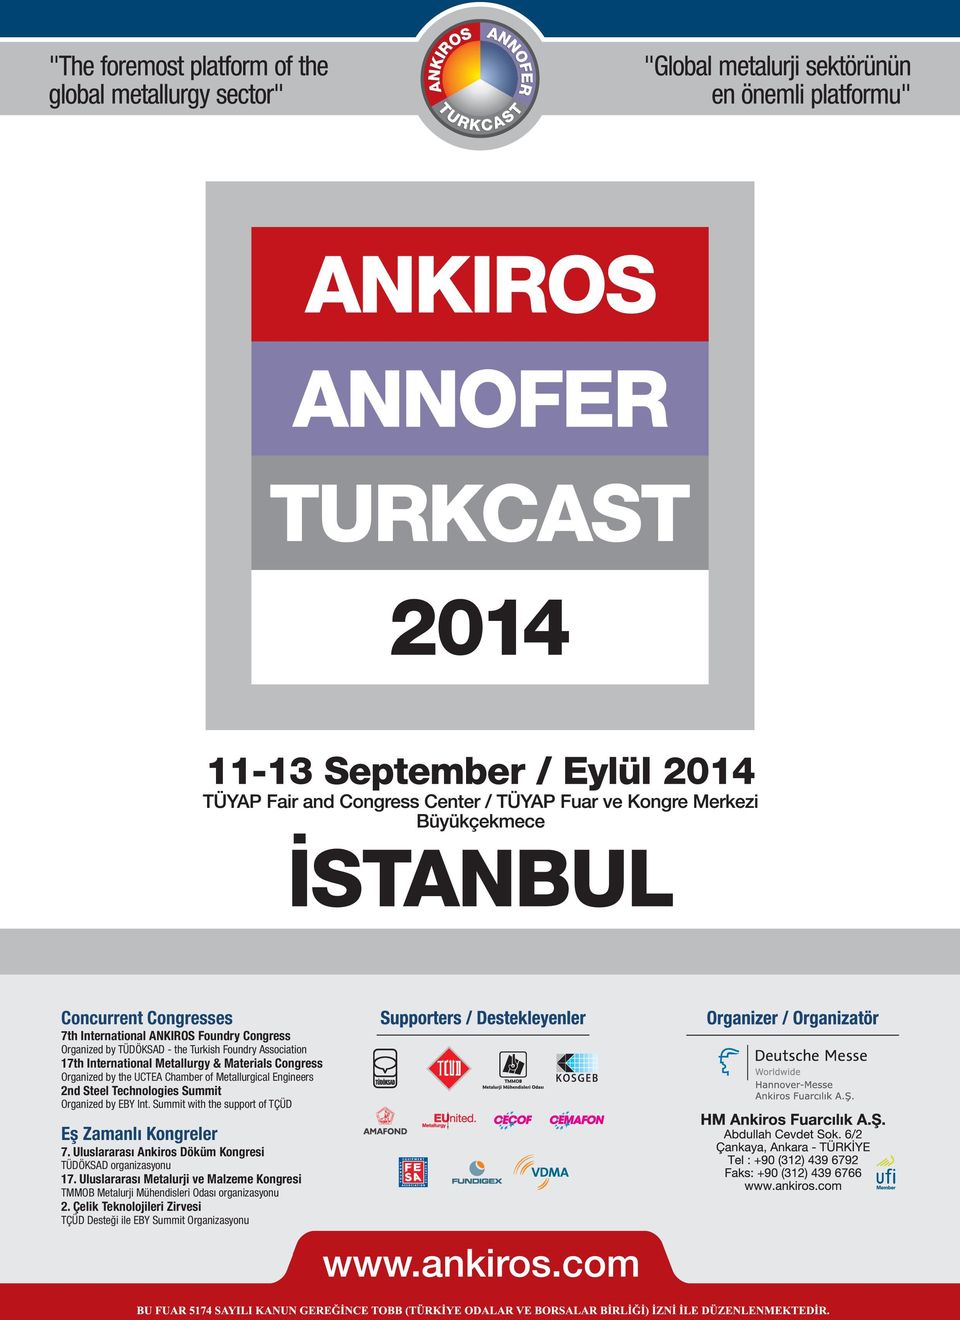 Summit with the support of TÇÜD Eş Zamanlı Kongreler 7. Uluslararası Ankiros Döküm Kongresi TÜDÖKSAD organizasyonu 17.